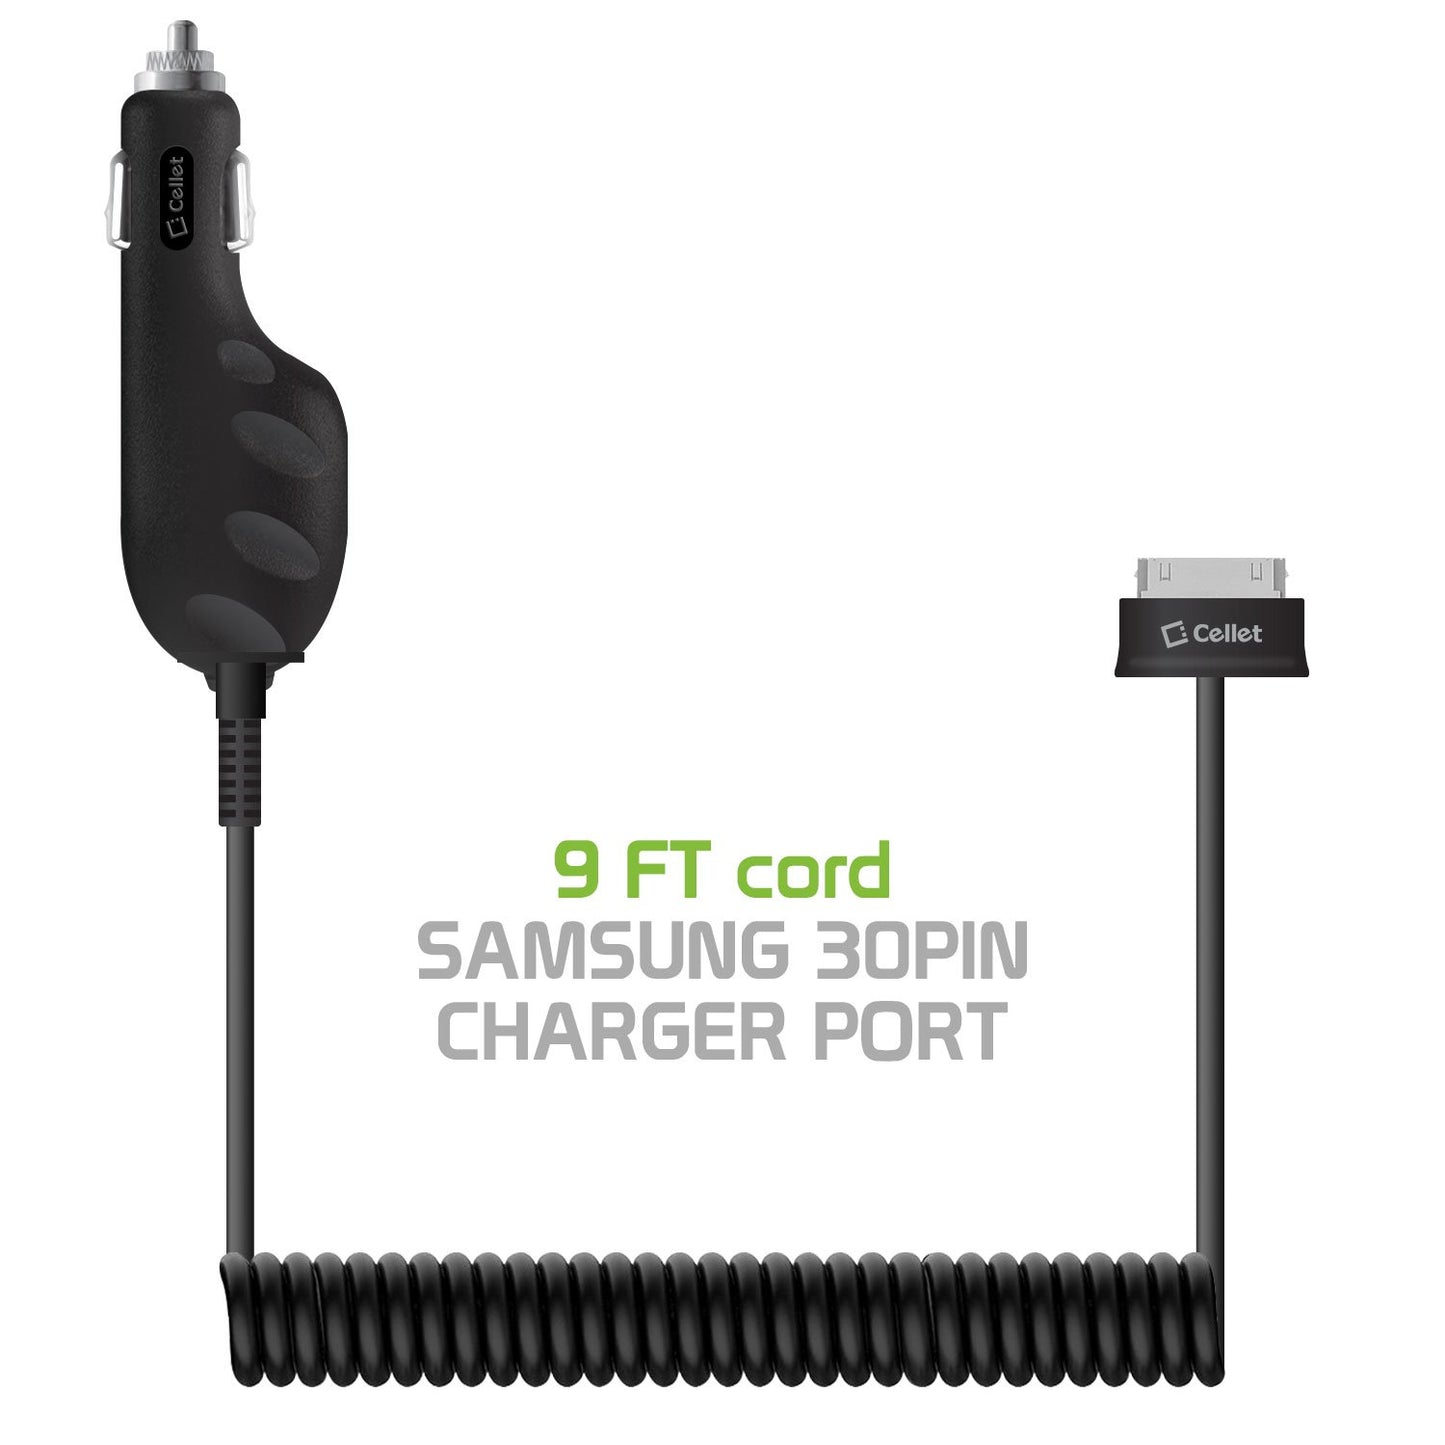 Car Charger for Samsung Tablet, Samsung Tablet Car Charger, 30 Pin Car Charger with Coil Cable